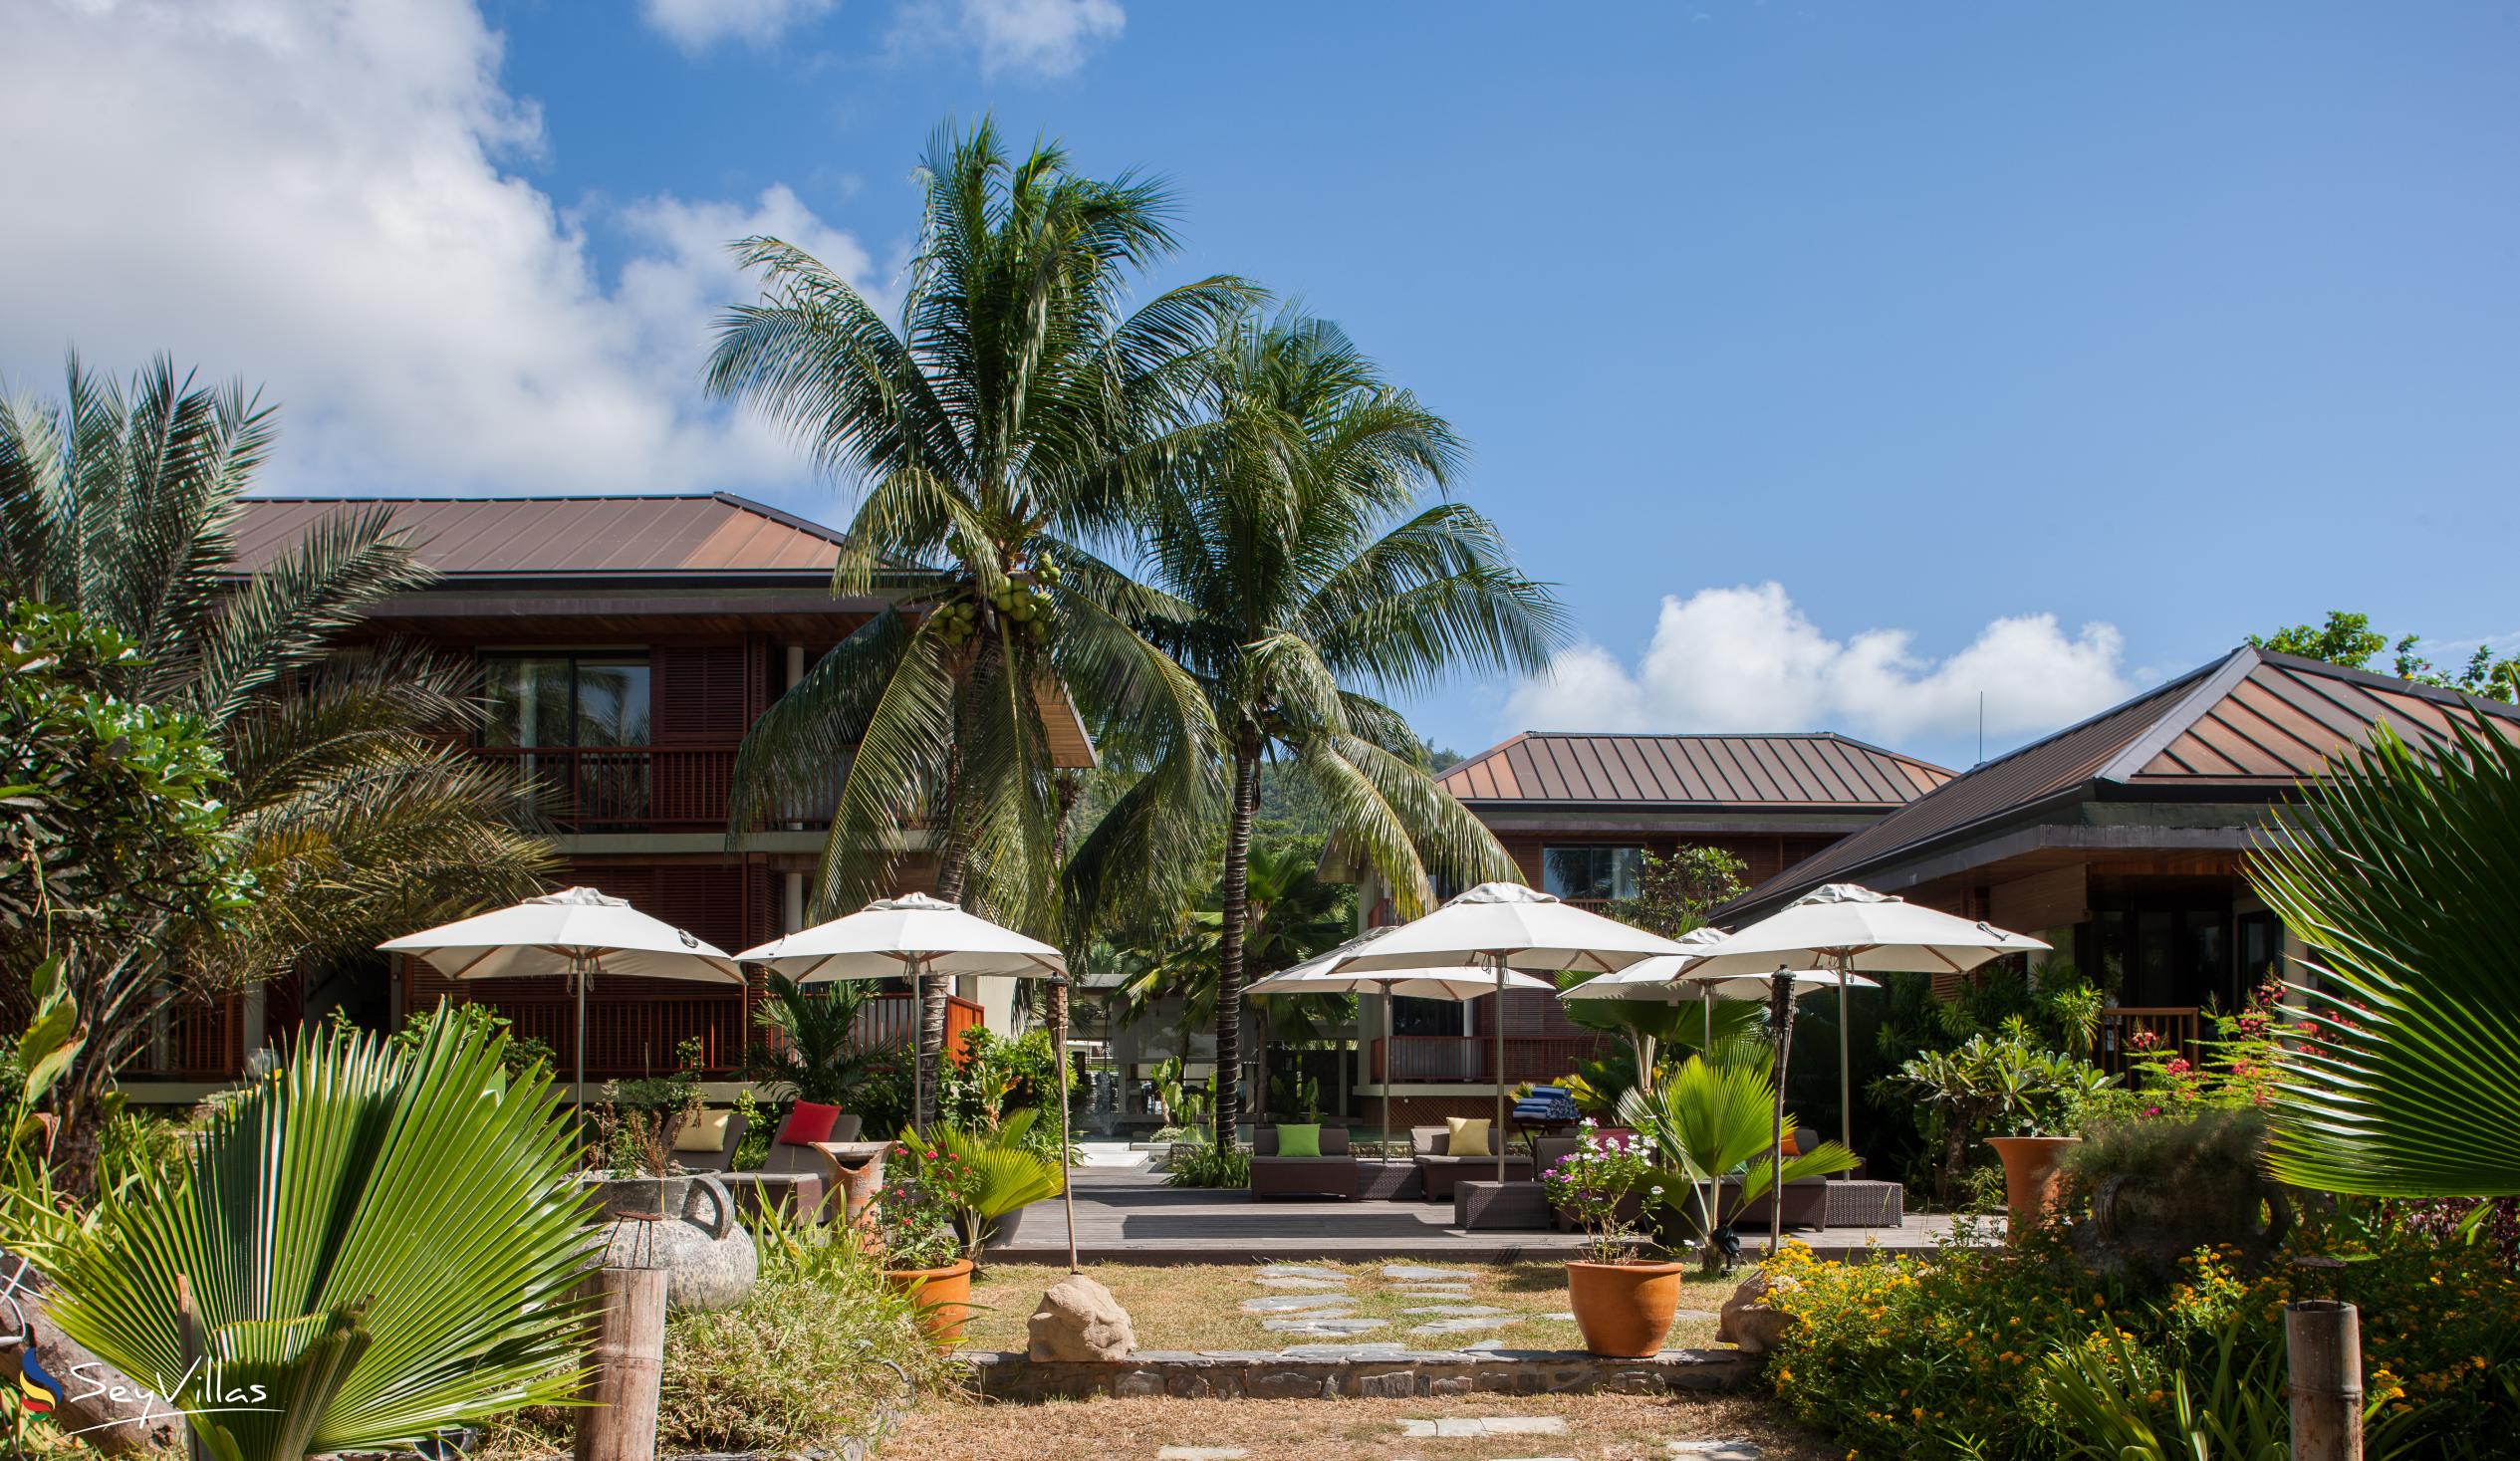 Foto 3: Dhevatara Beach Hotel - Aussenbereich - Praslin (Seychellen)